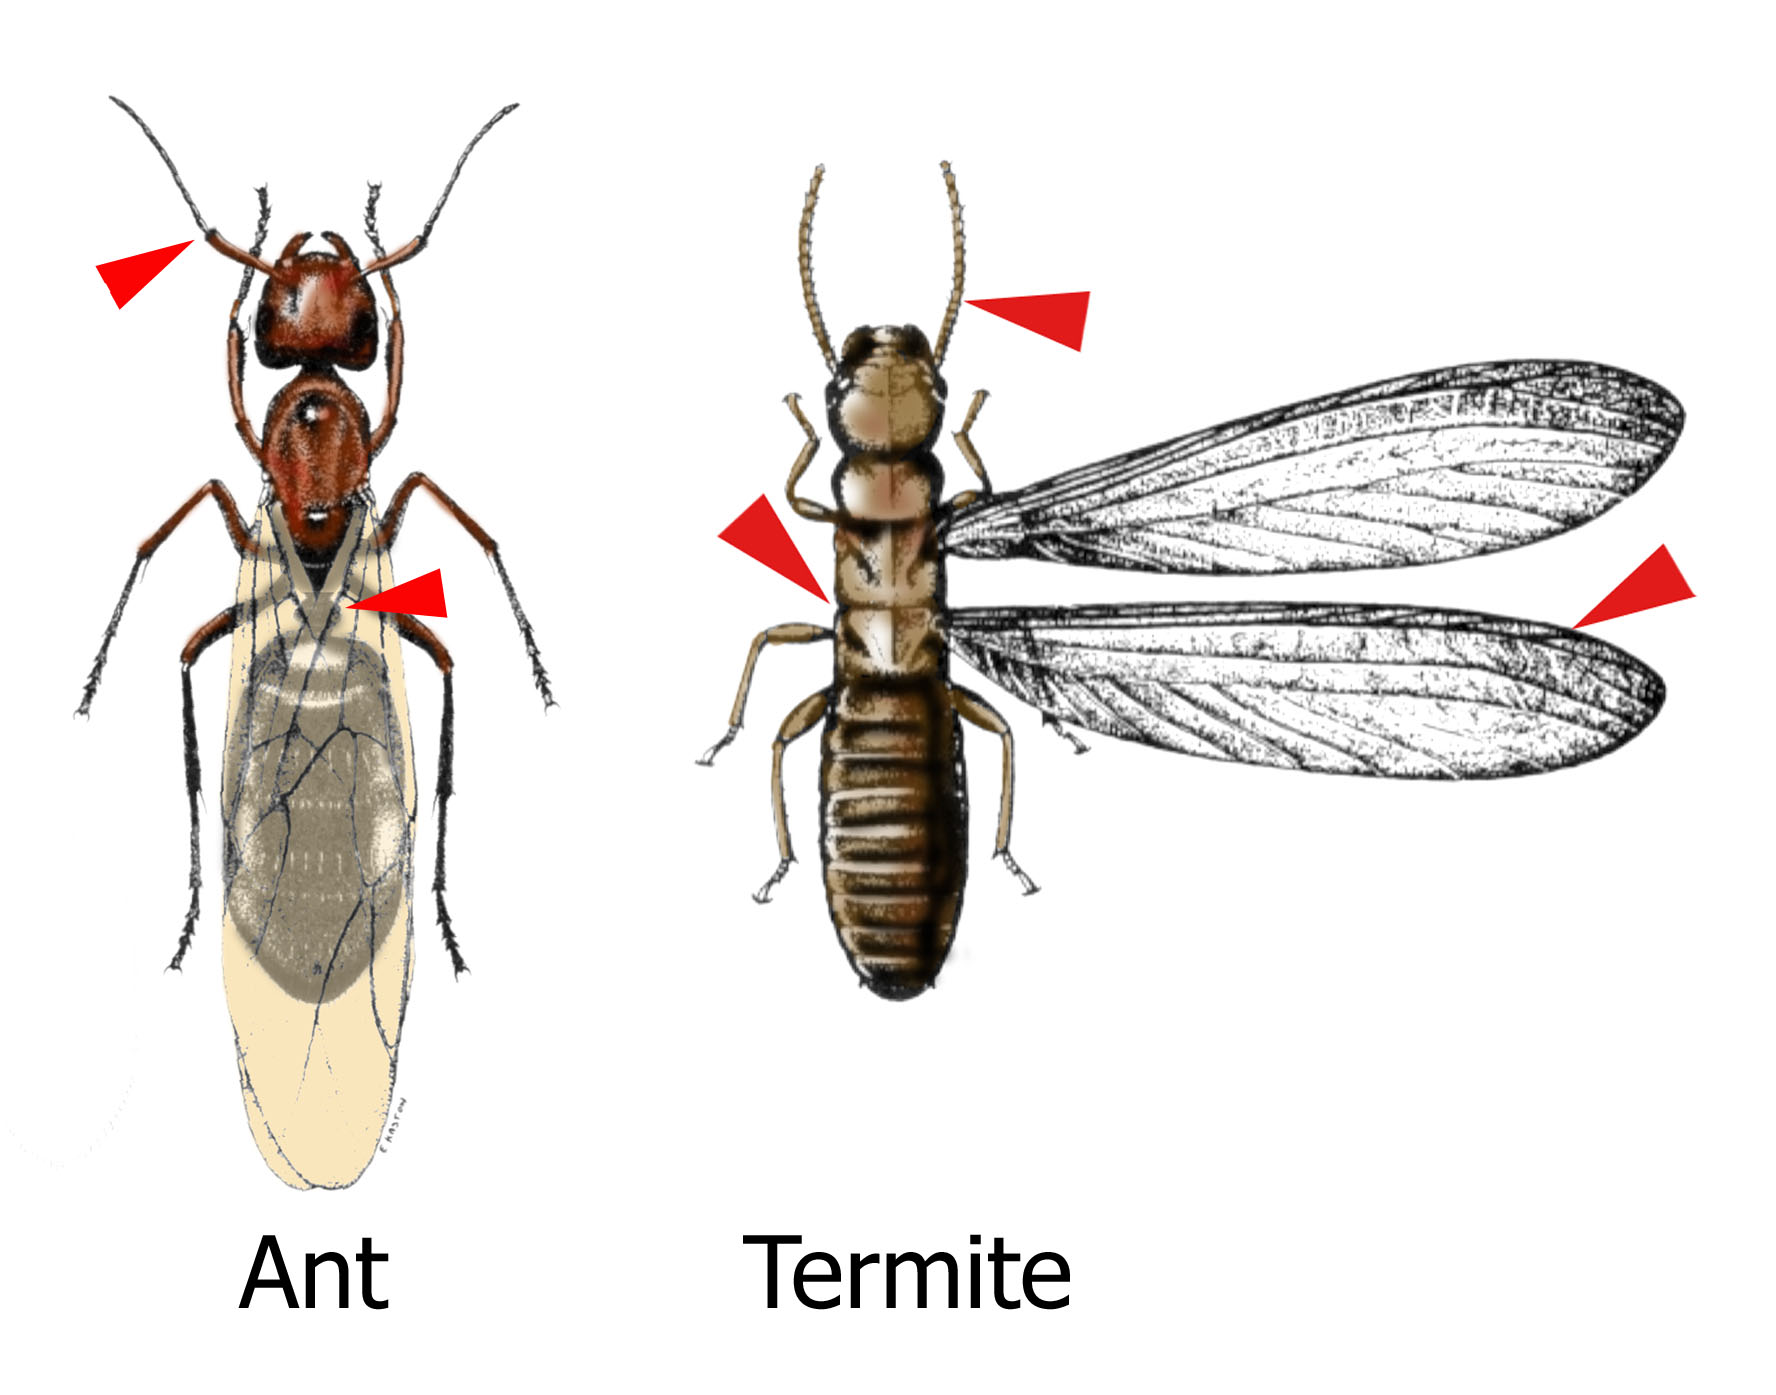 ant termite comparison